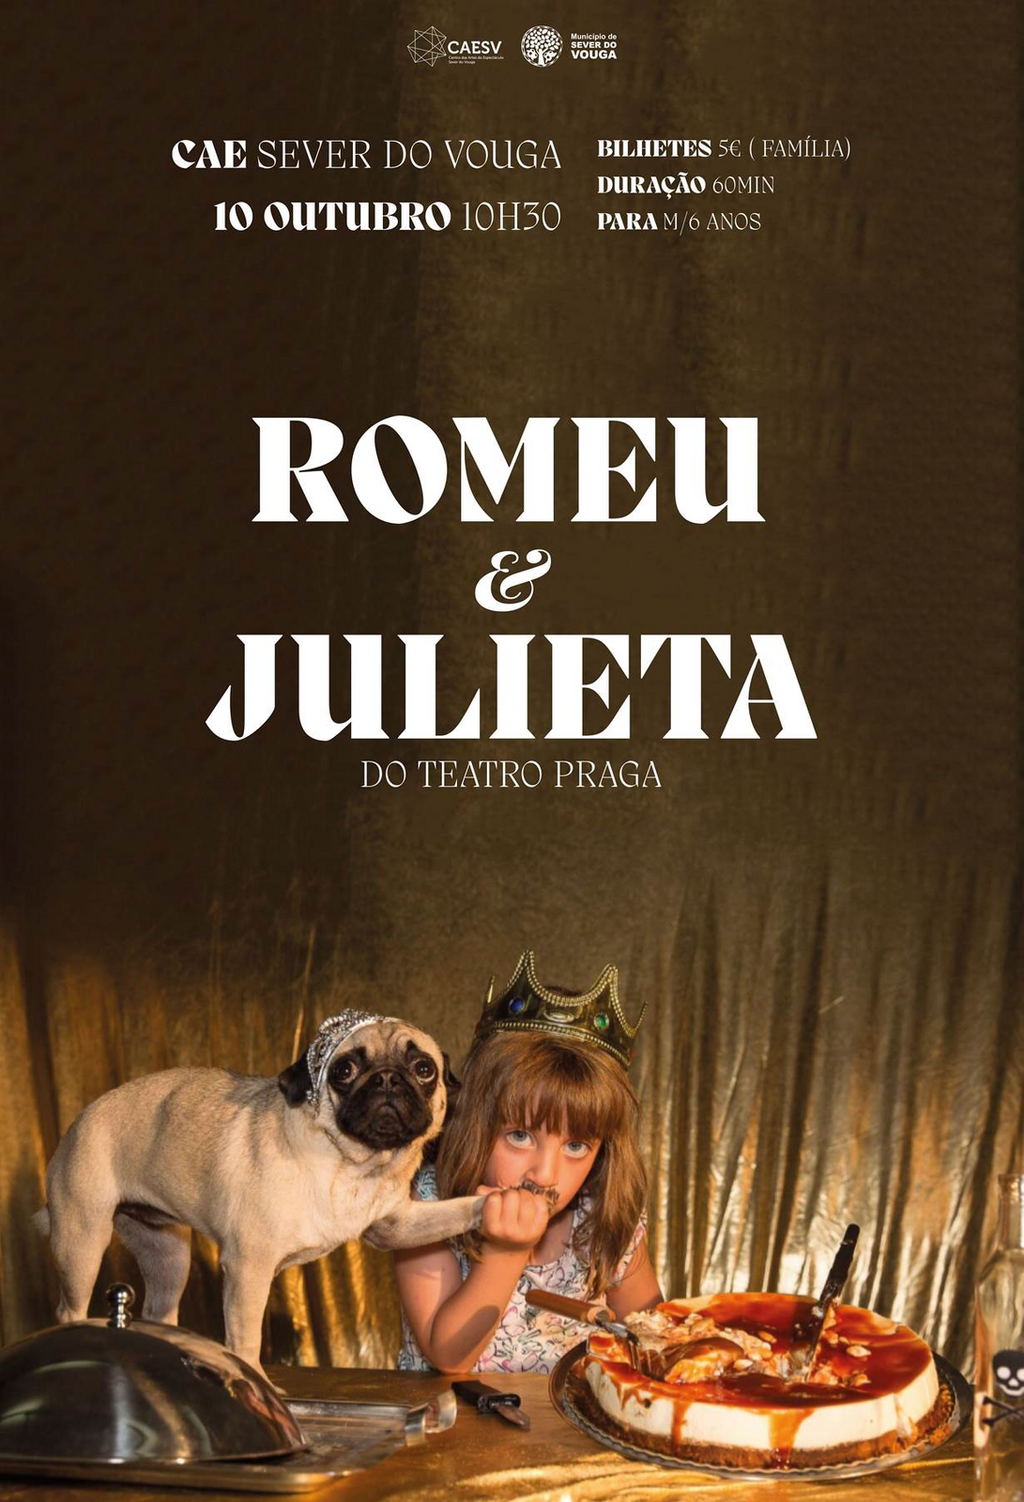 10 de Outubro às 10h30. Romeu & Julieta do Teatro Praga